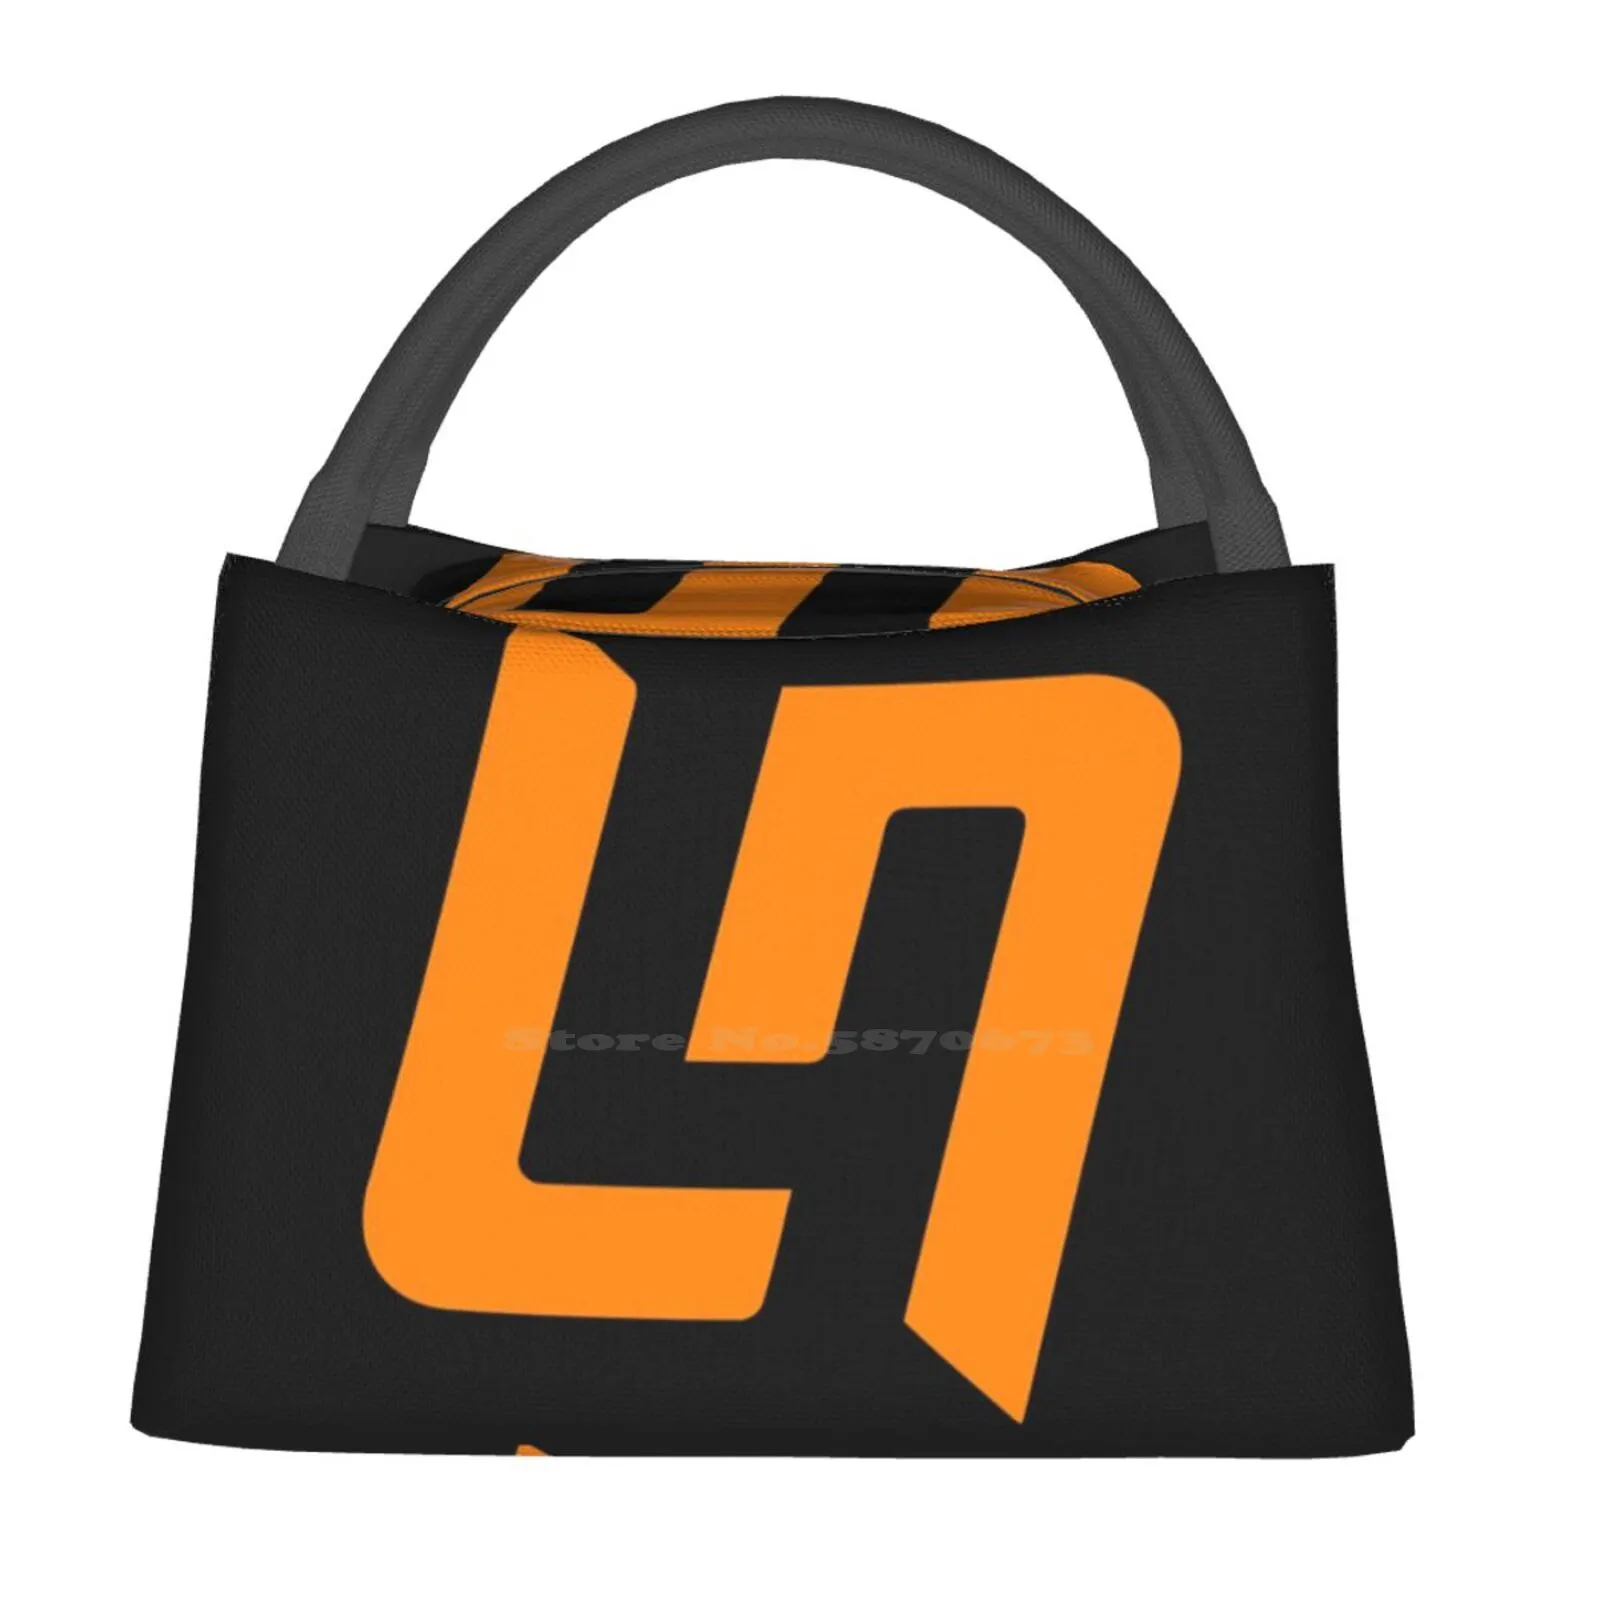 

Командная Портативная сумка L4Ndo с логотипом-Лэндо Норрис-оранжевая на черном цвете, новая теплоизолированная Сумка-тоут для ланча Mclaren